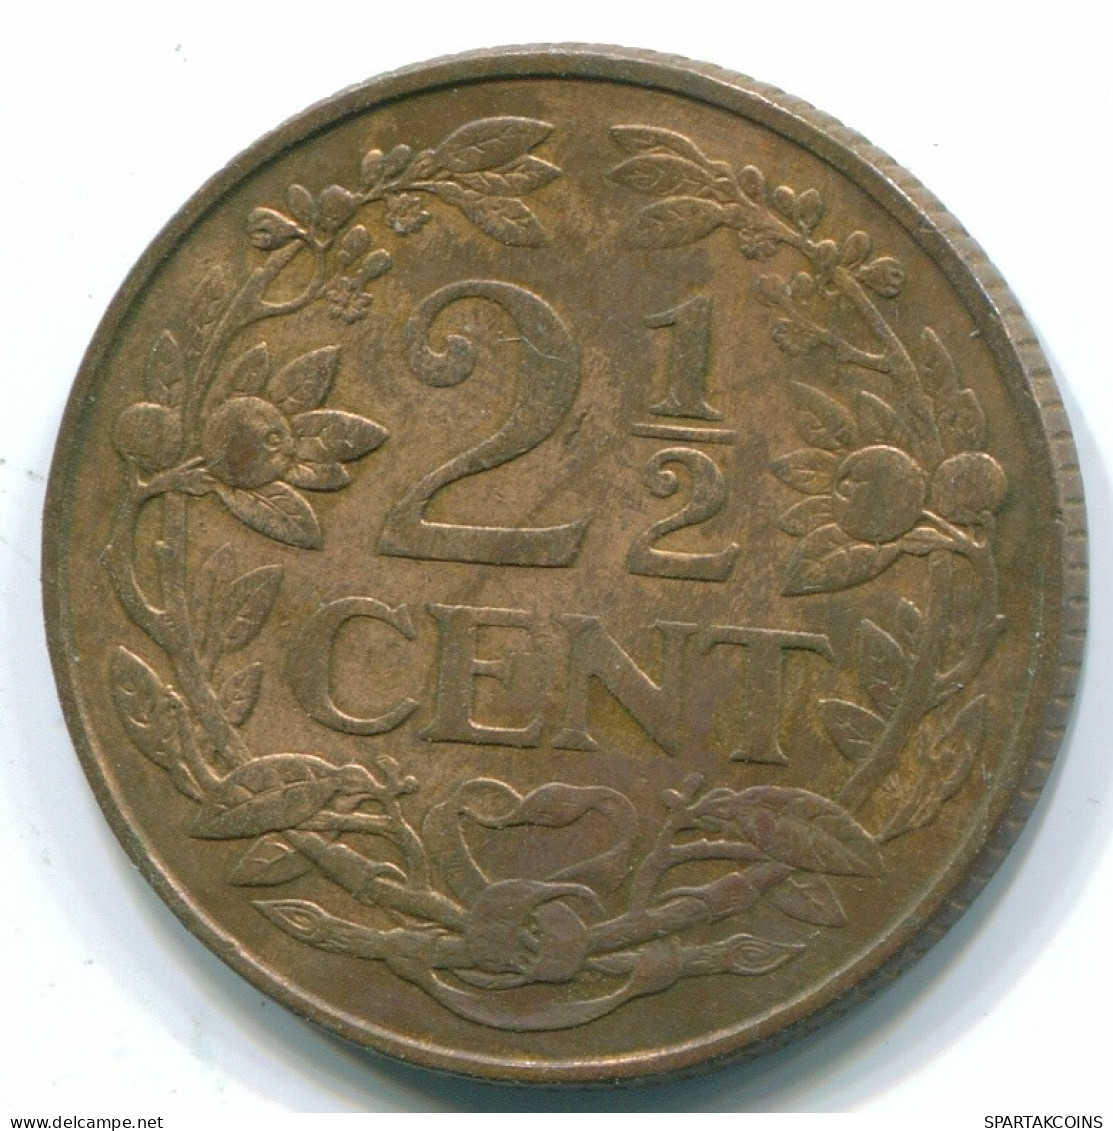 2 1/2 CENT 1965 CURACAO NIEDERLANDE Bronze Koloniale Münze #S10207.D.A - Curaçao